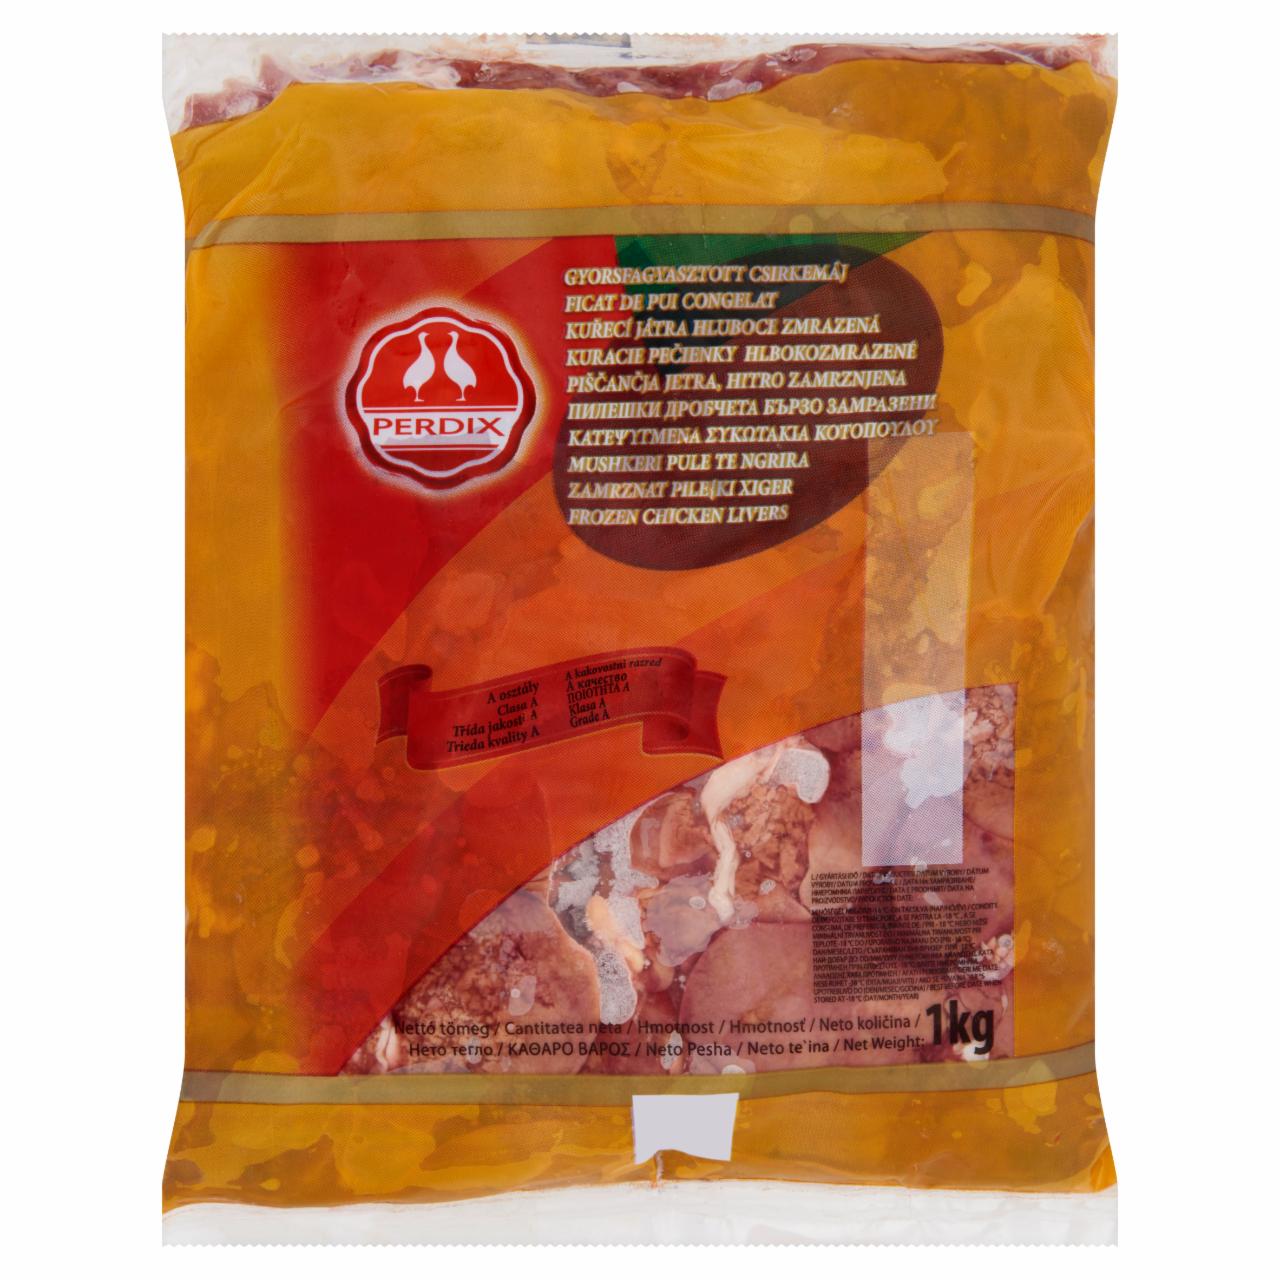 Képek - Perdix gyorsfagyasztott csirkemáj 1 kg